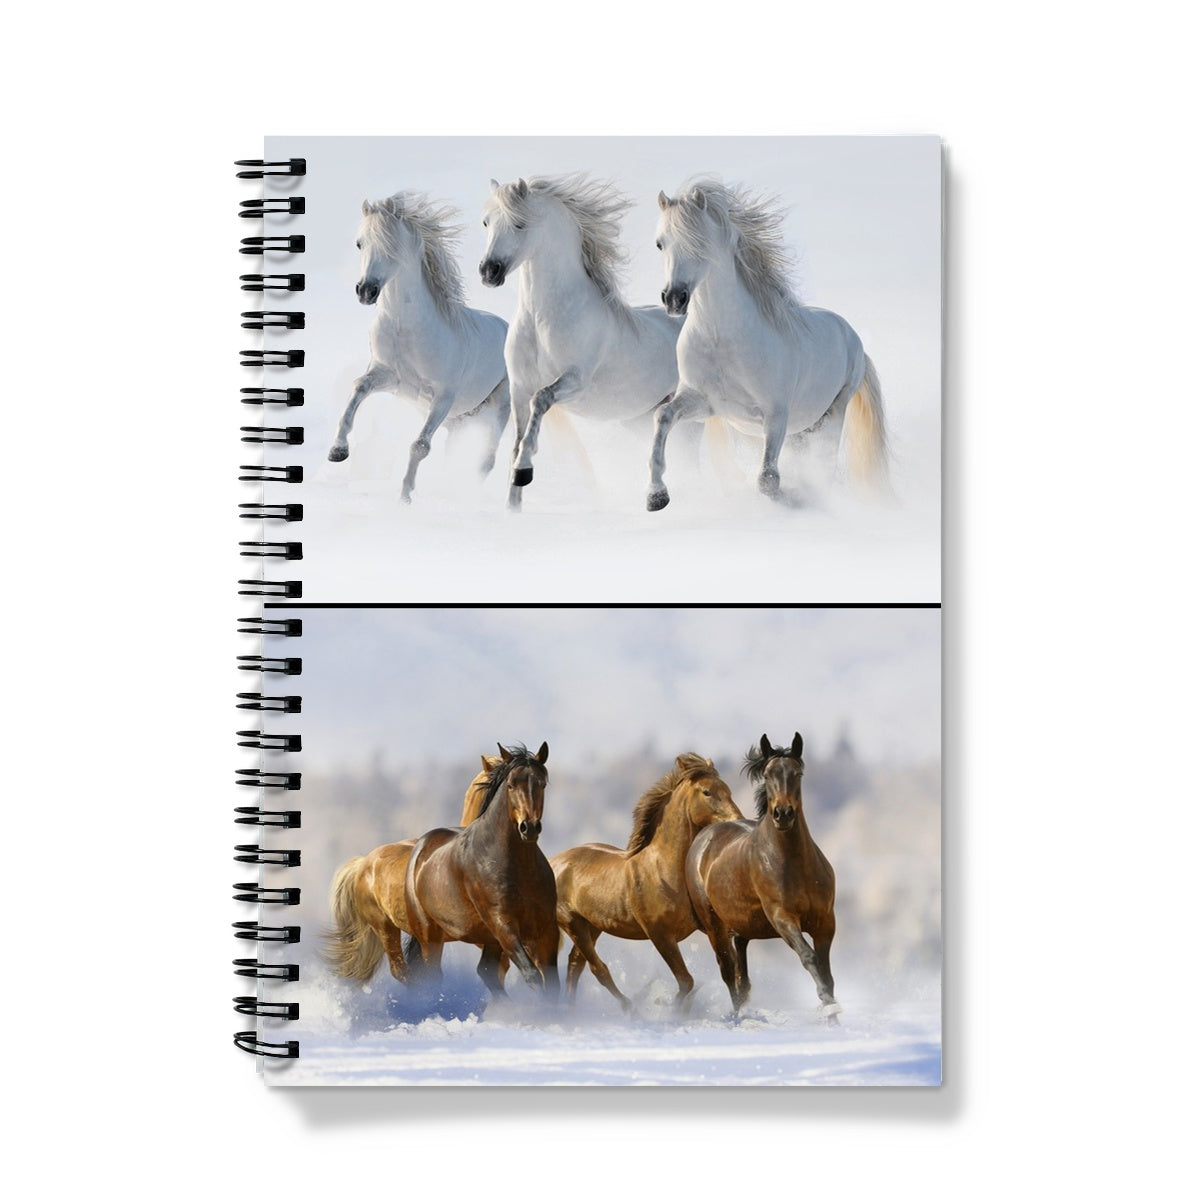 The Running Horse Notebook